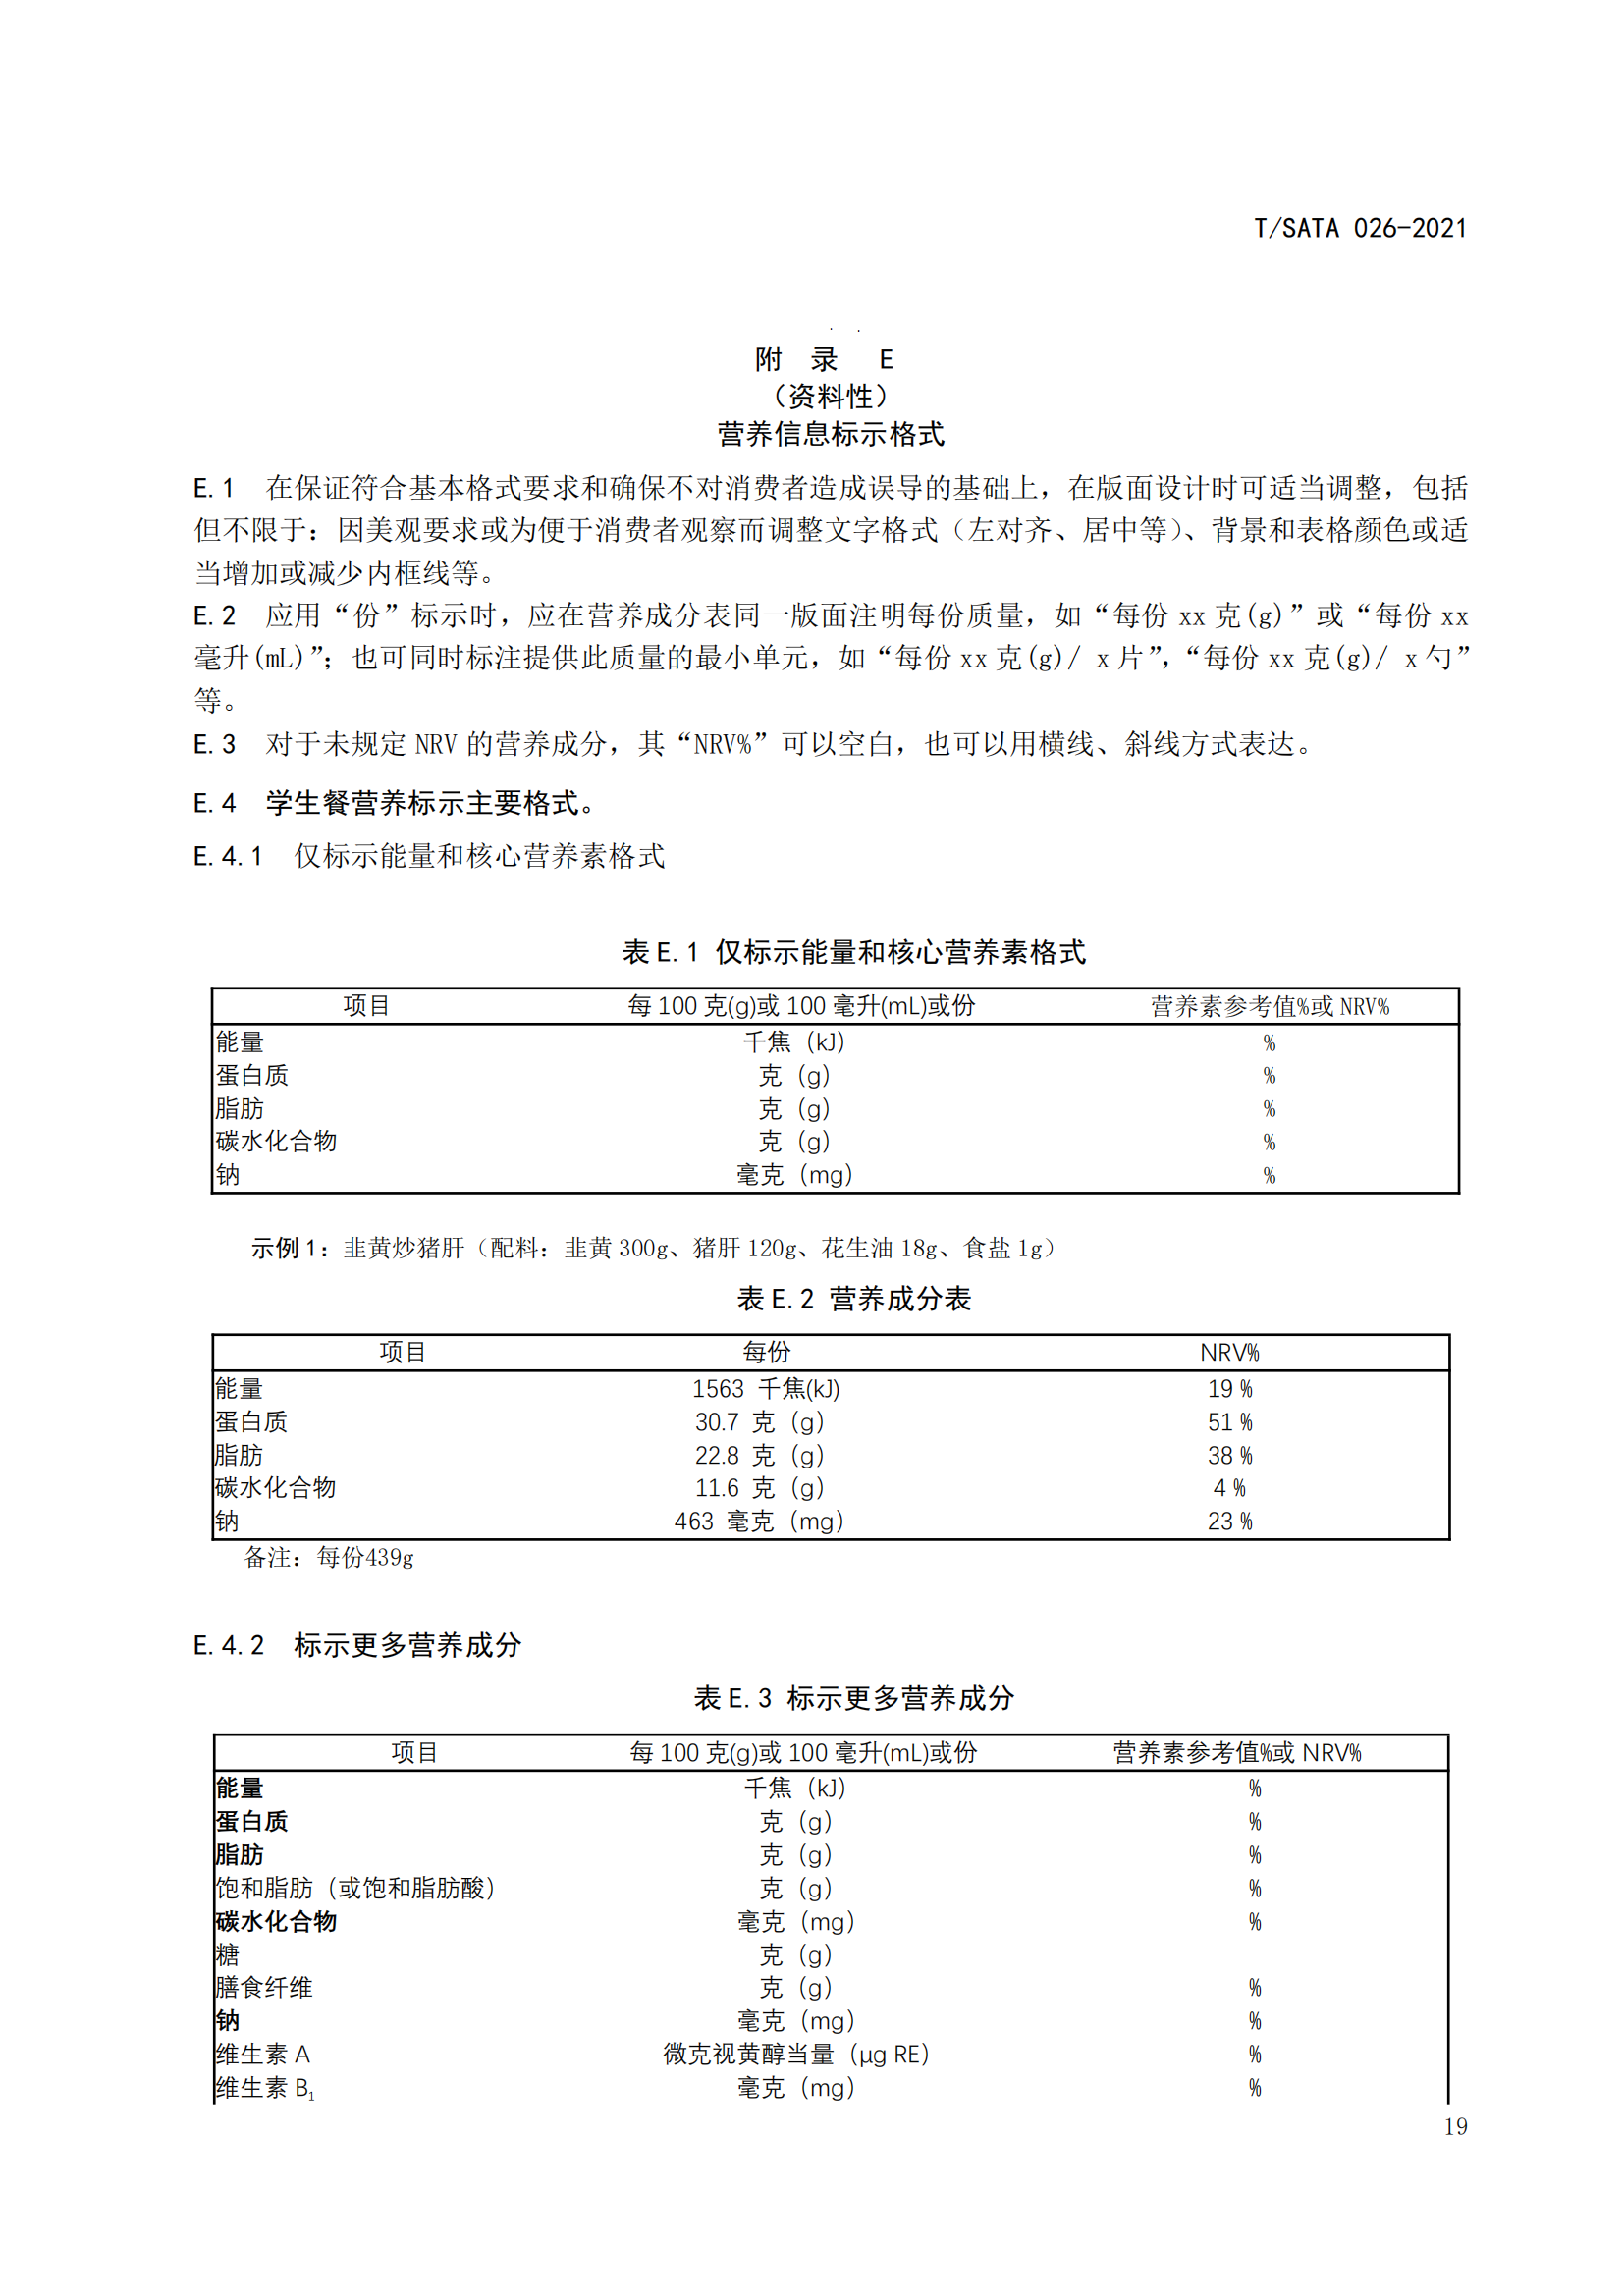 《深圳市校外集中配送学生餐操作规范》团体标准（发布版）2021.11.18终_21.png